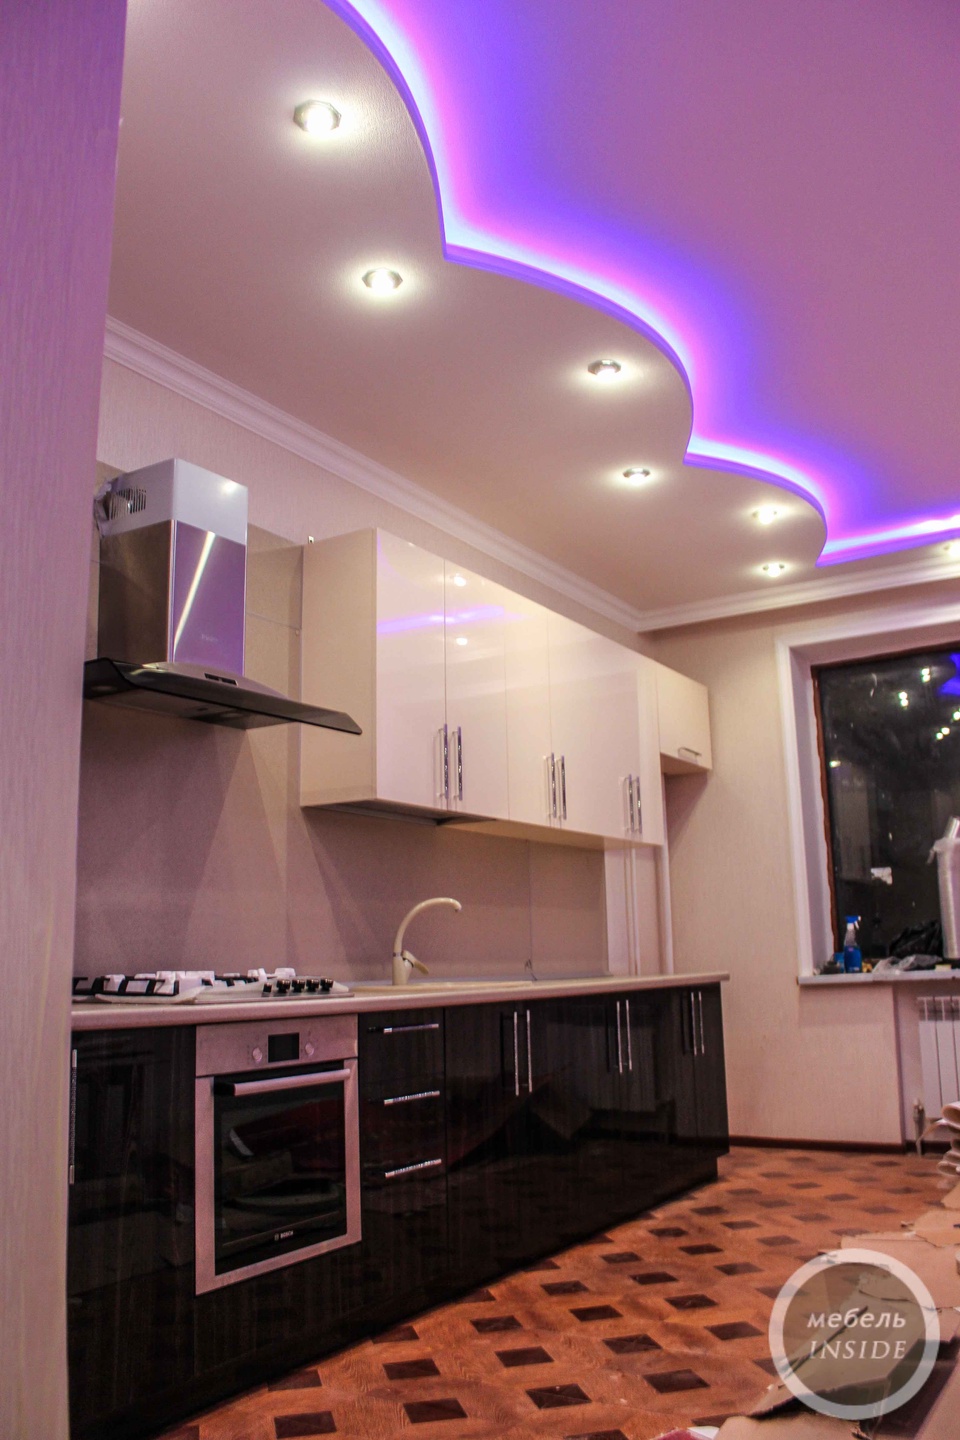 Кухня светлый верх темный низ высокий глянец АГТ 5 метров - 0 ₽, заказать онлайн.